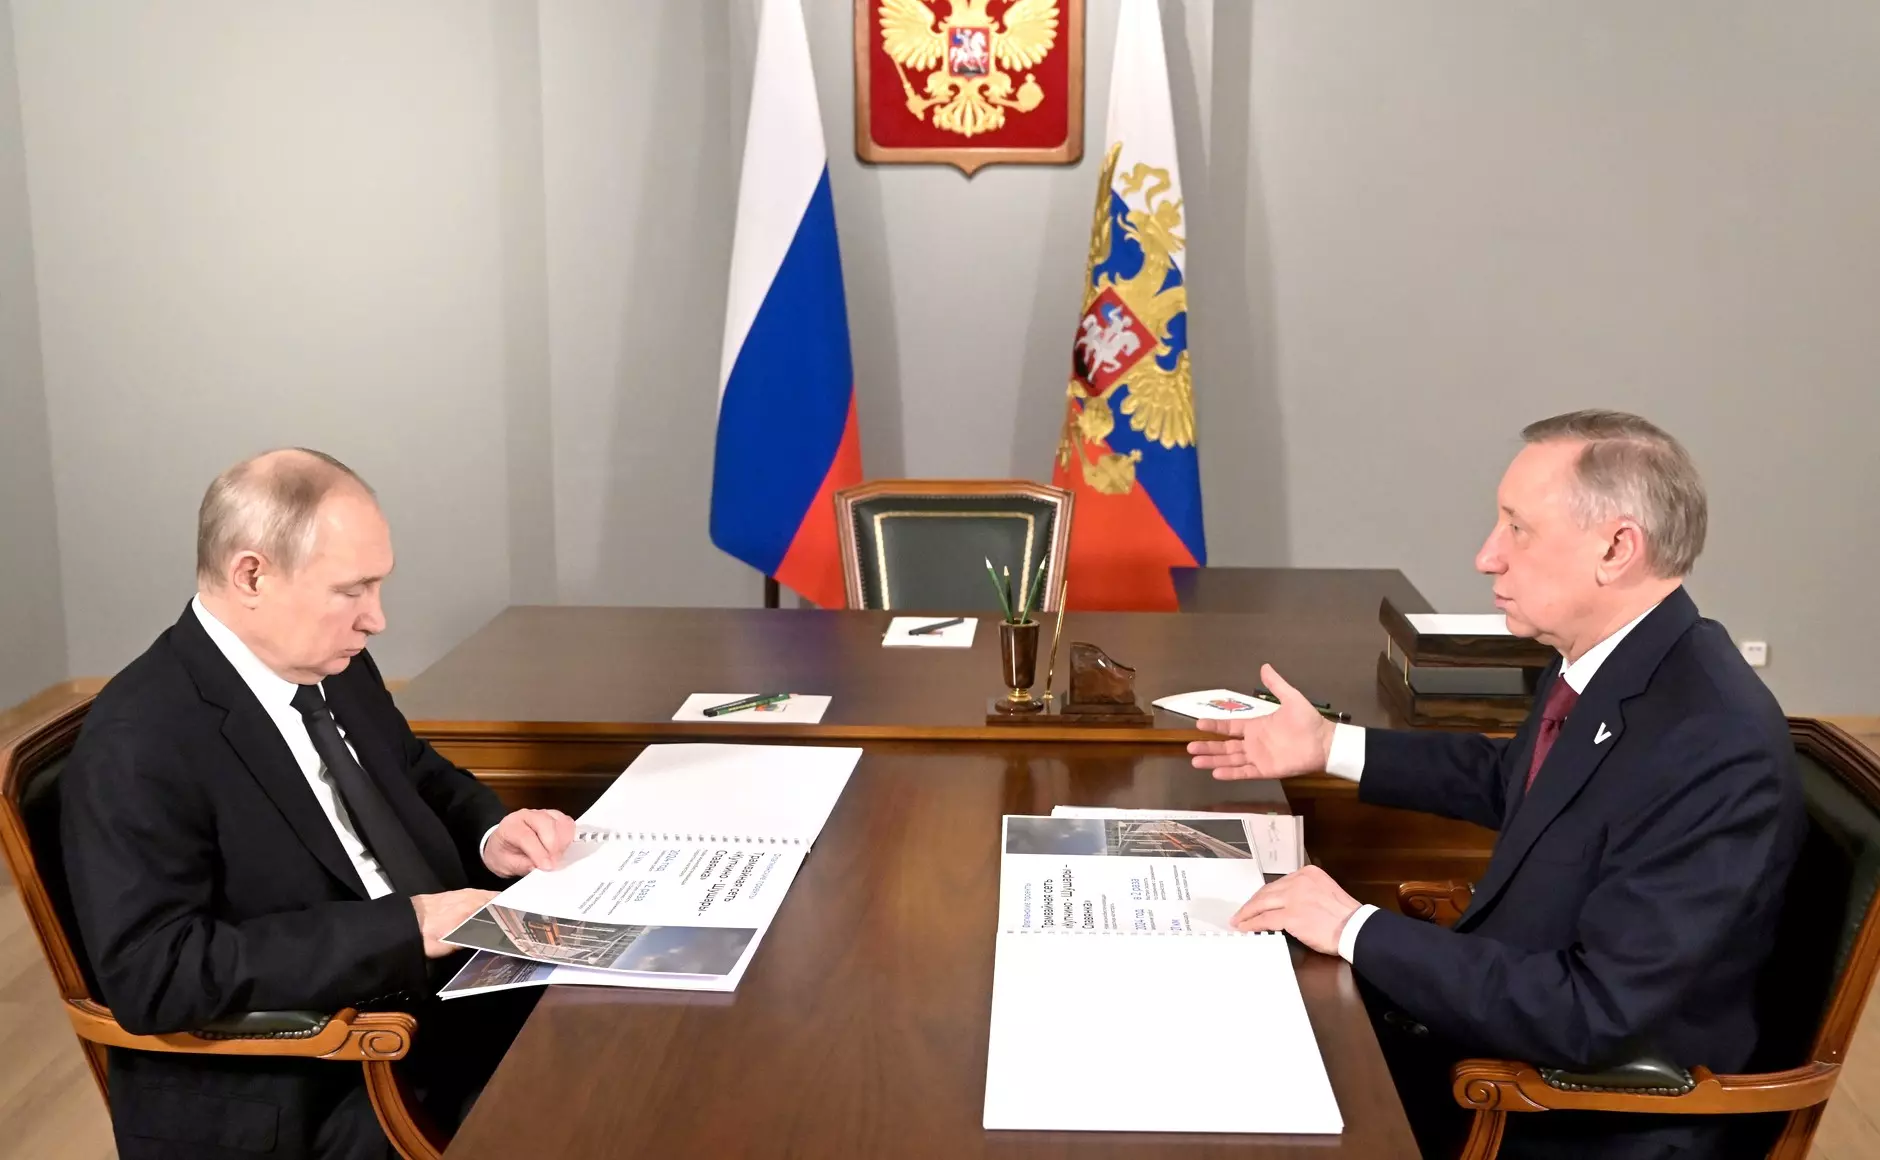 Владимир Путин провёл рабочую встречу с губернатором Санкт-Петербурга и посетил музей обороны и блокады Ленинграда